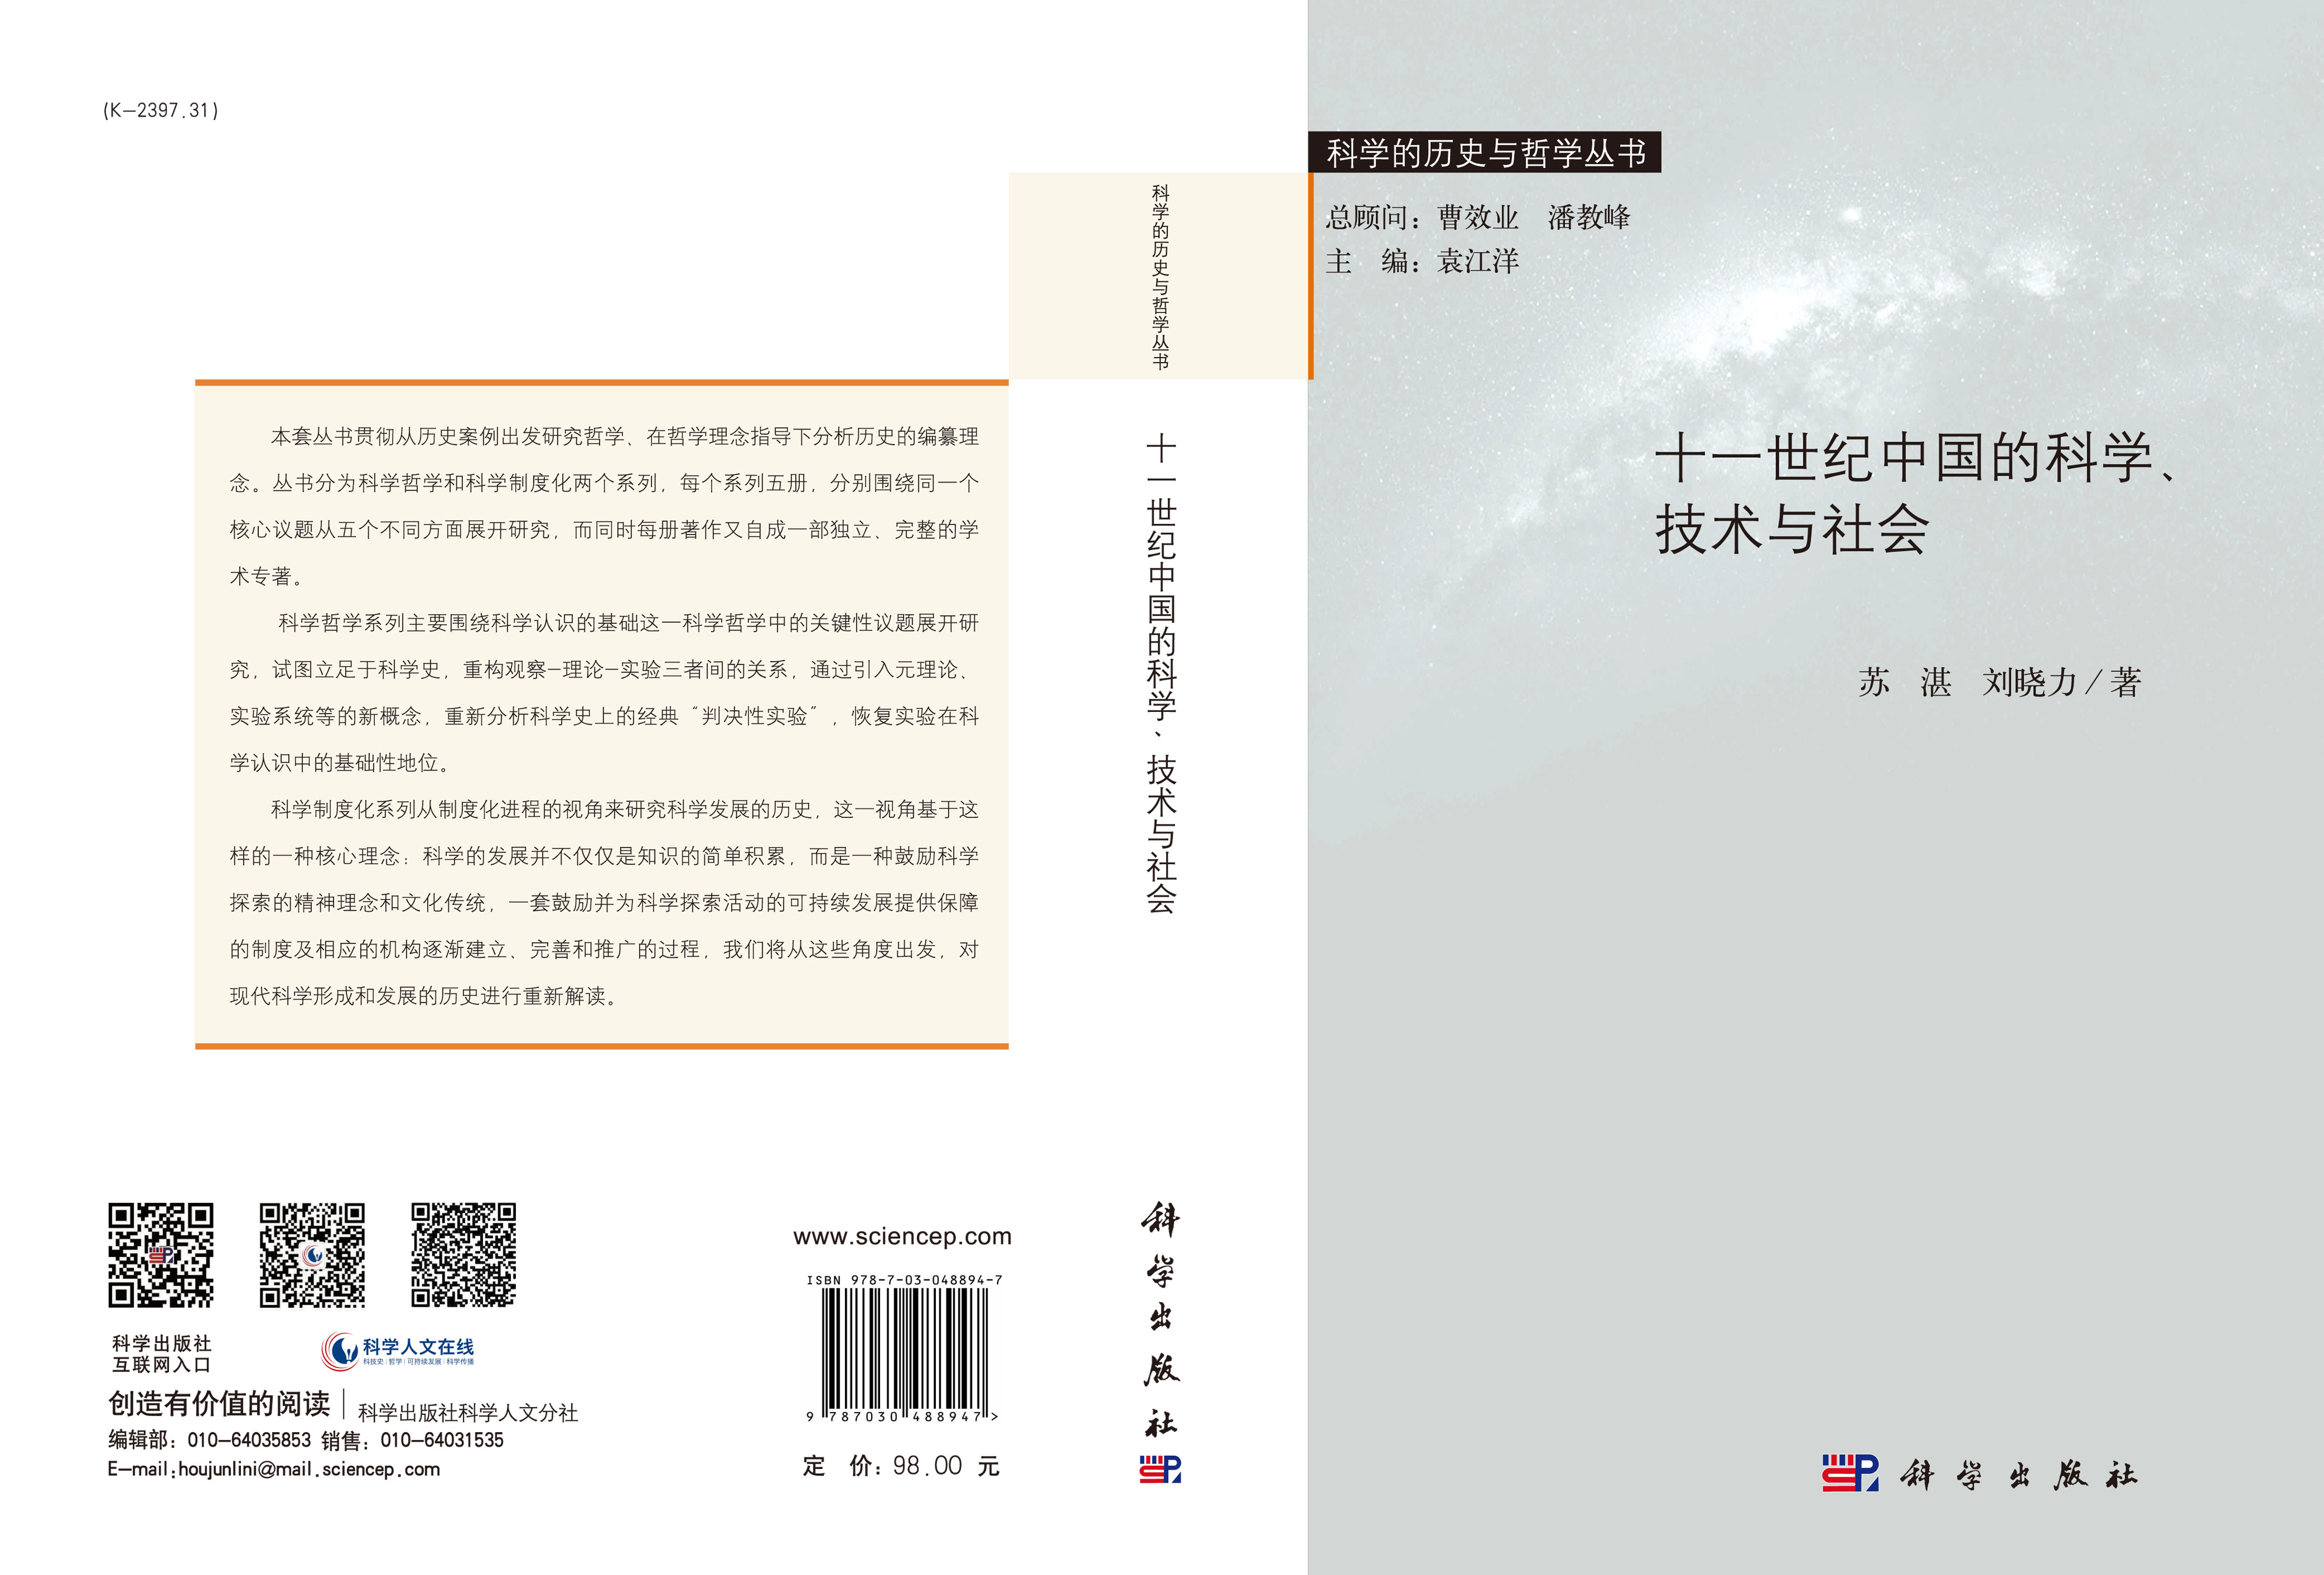 十一世纪中国的科学、技术与社会